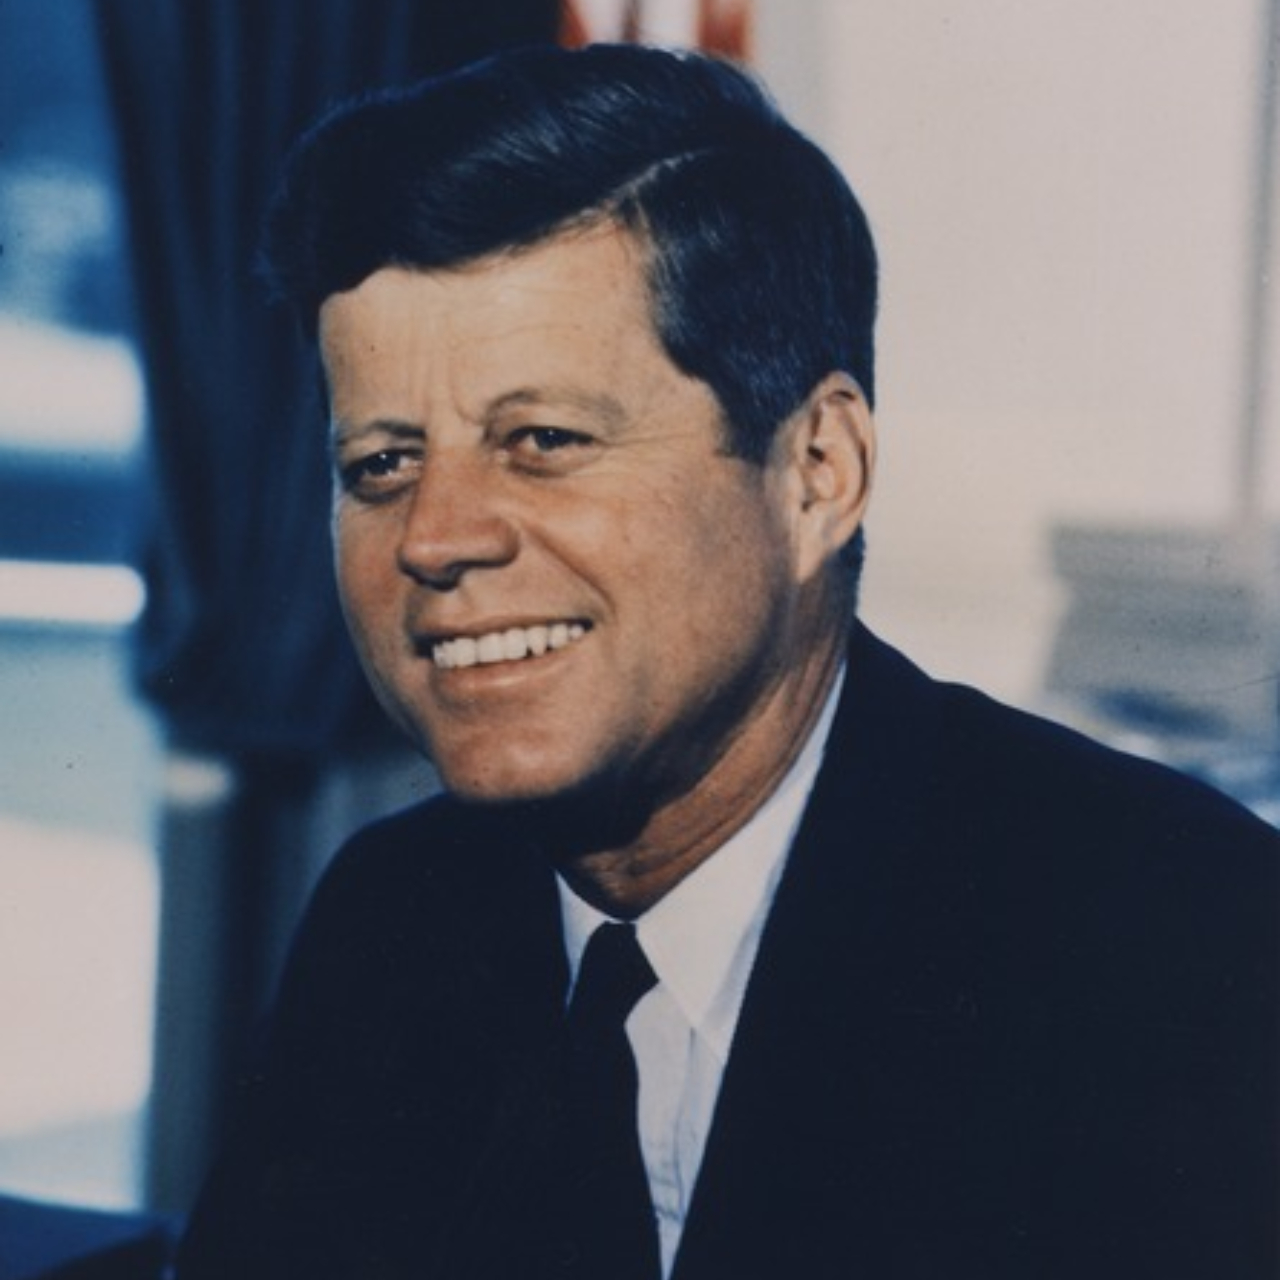 Fotografia de John F. Kennedy, ex-presidente dos Estados Unidos